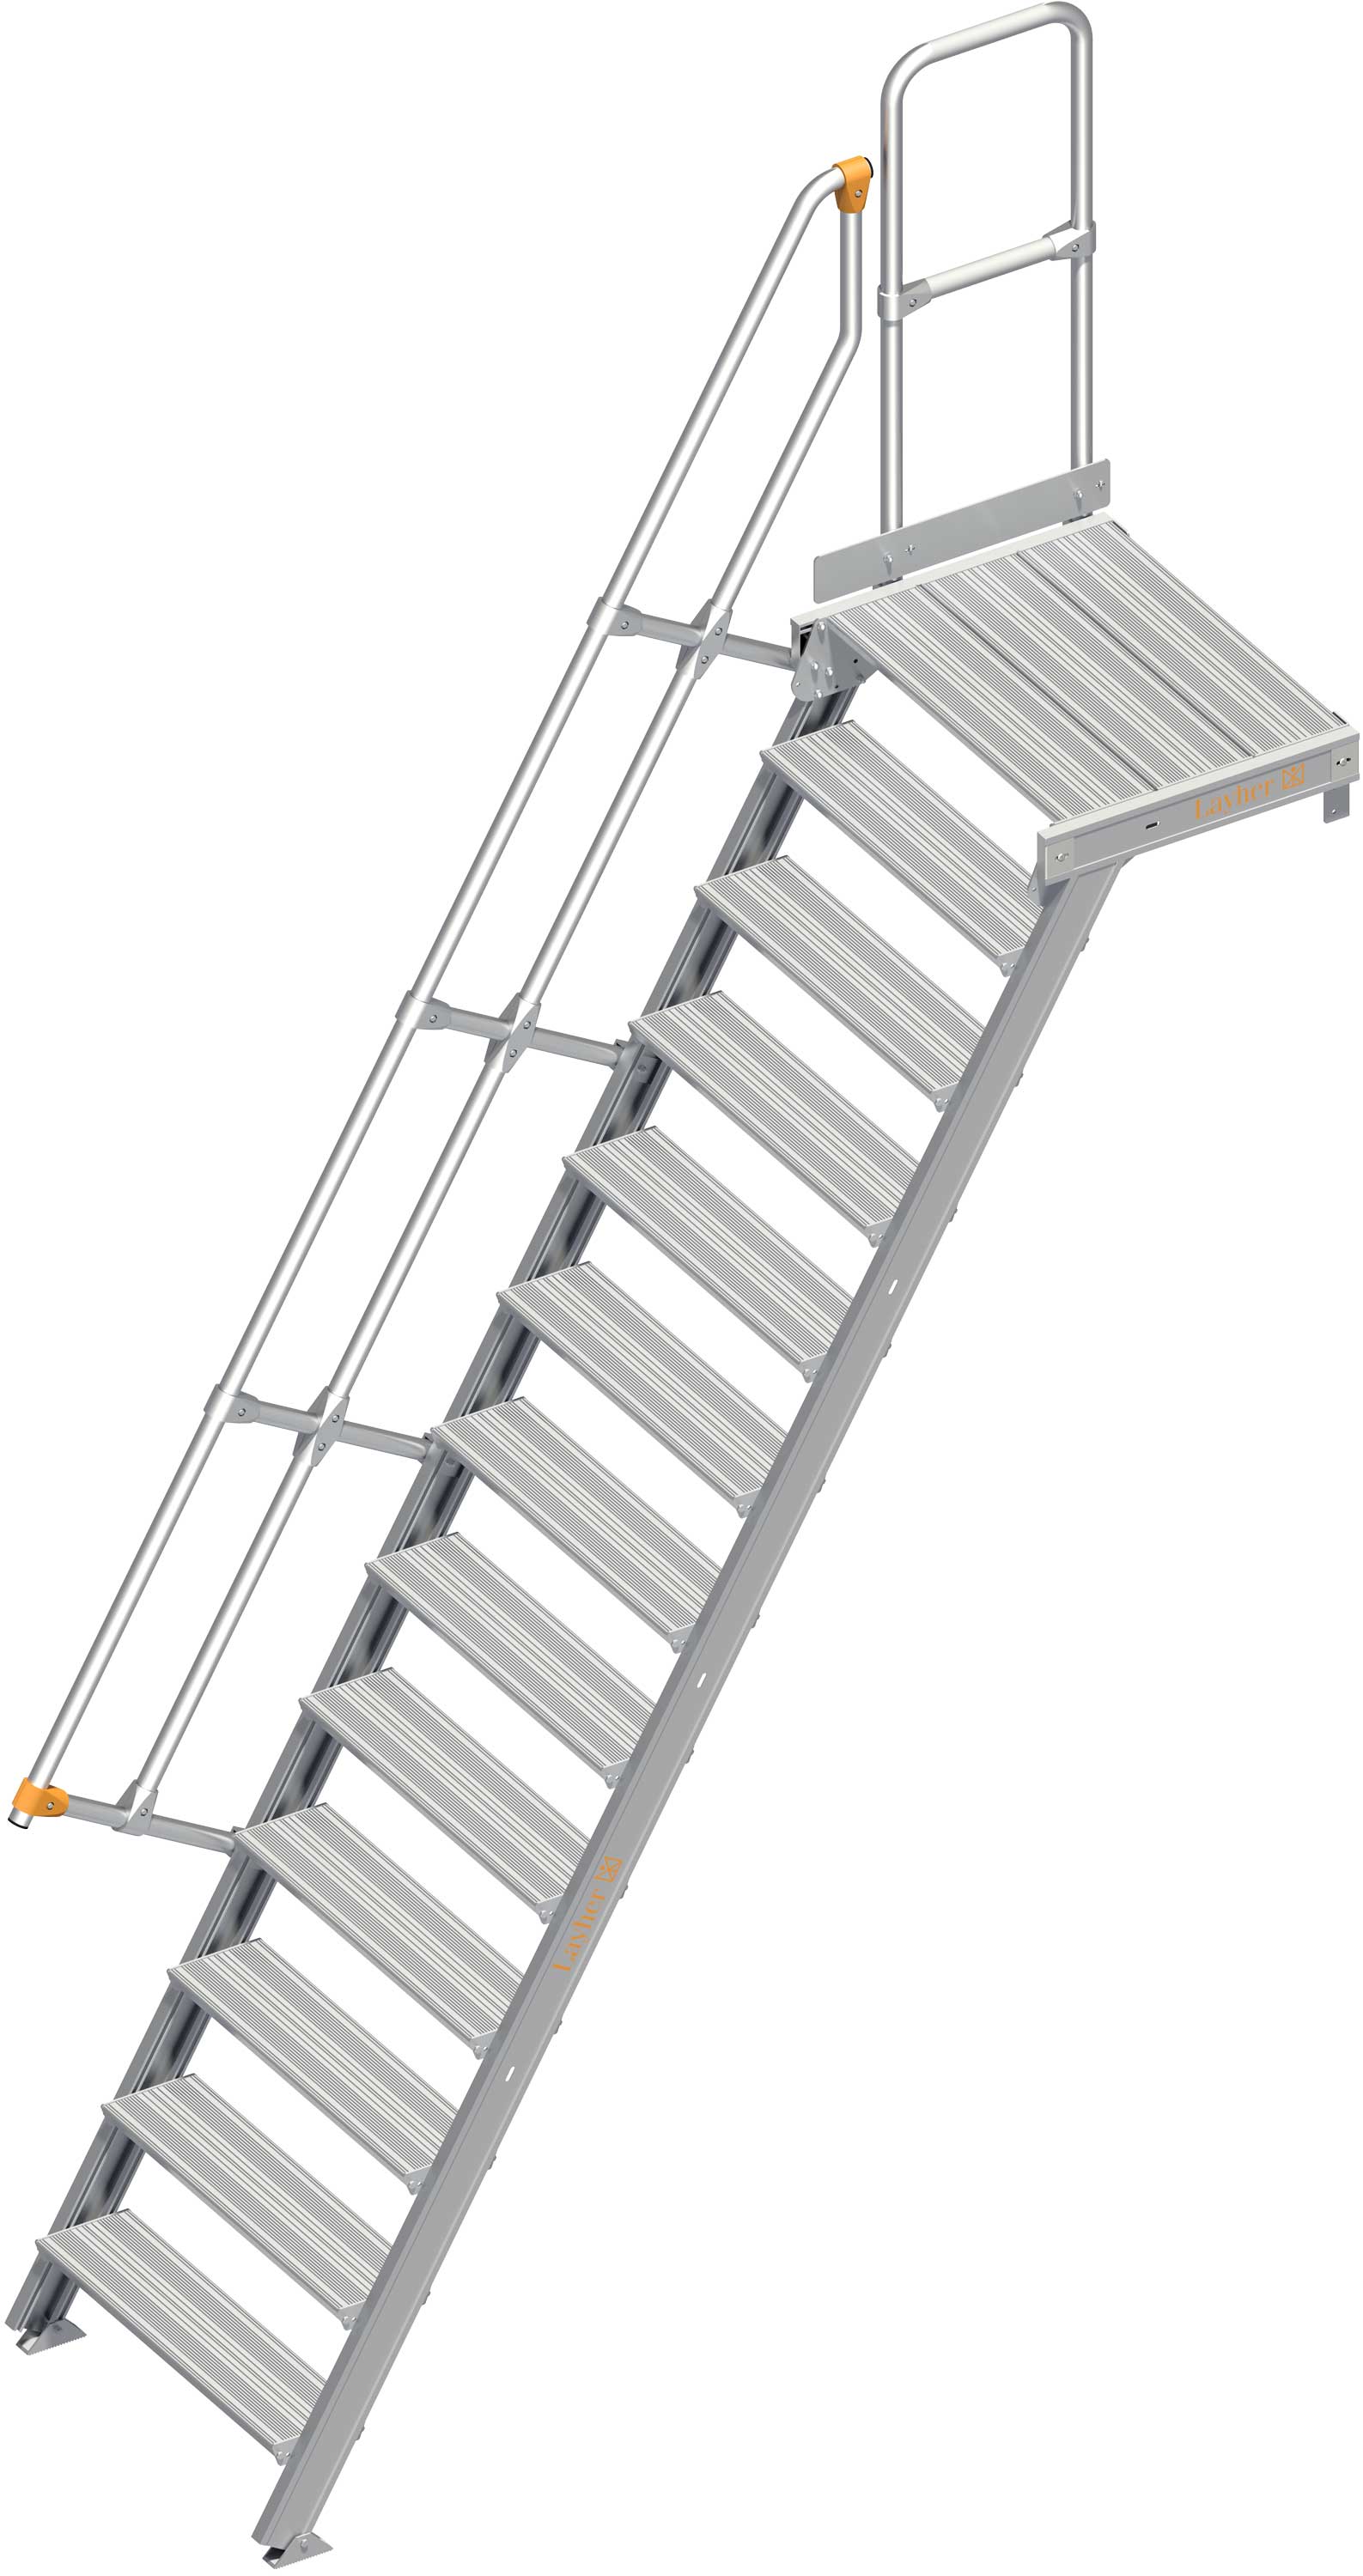 Layher Plattformtreppe 60° 13 Stufen - 800 mm breit